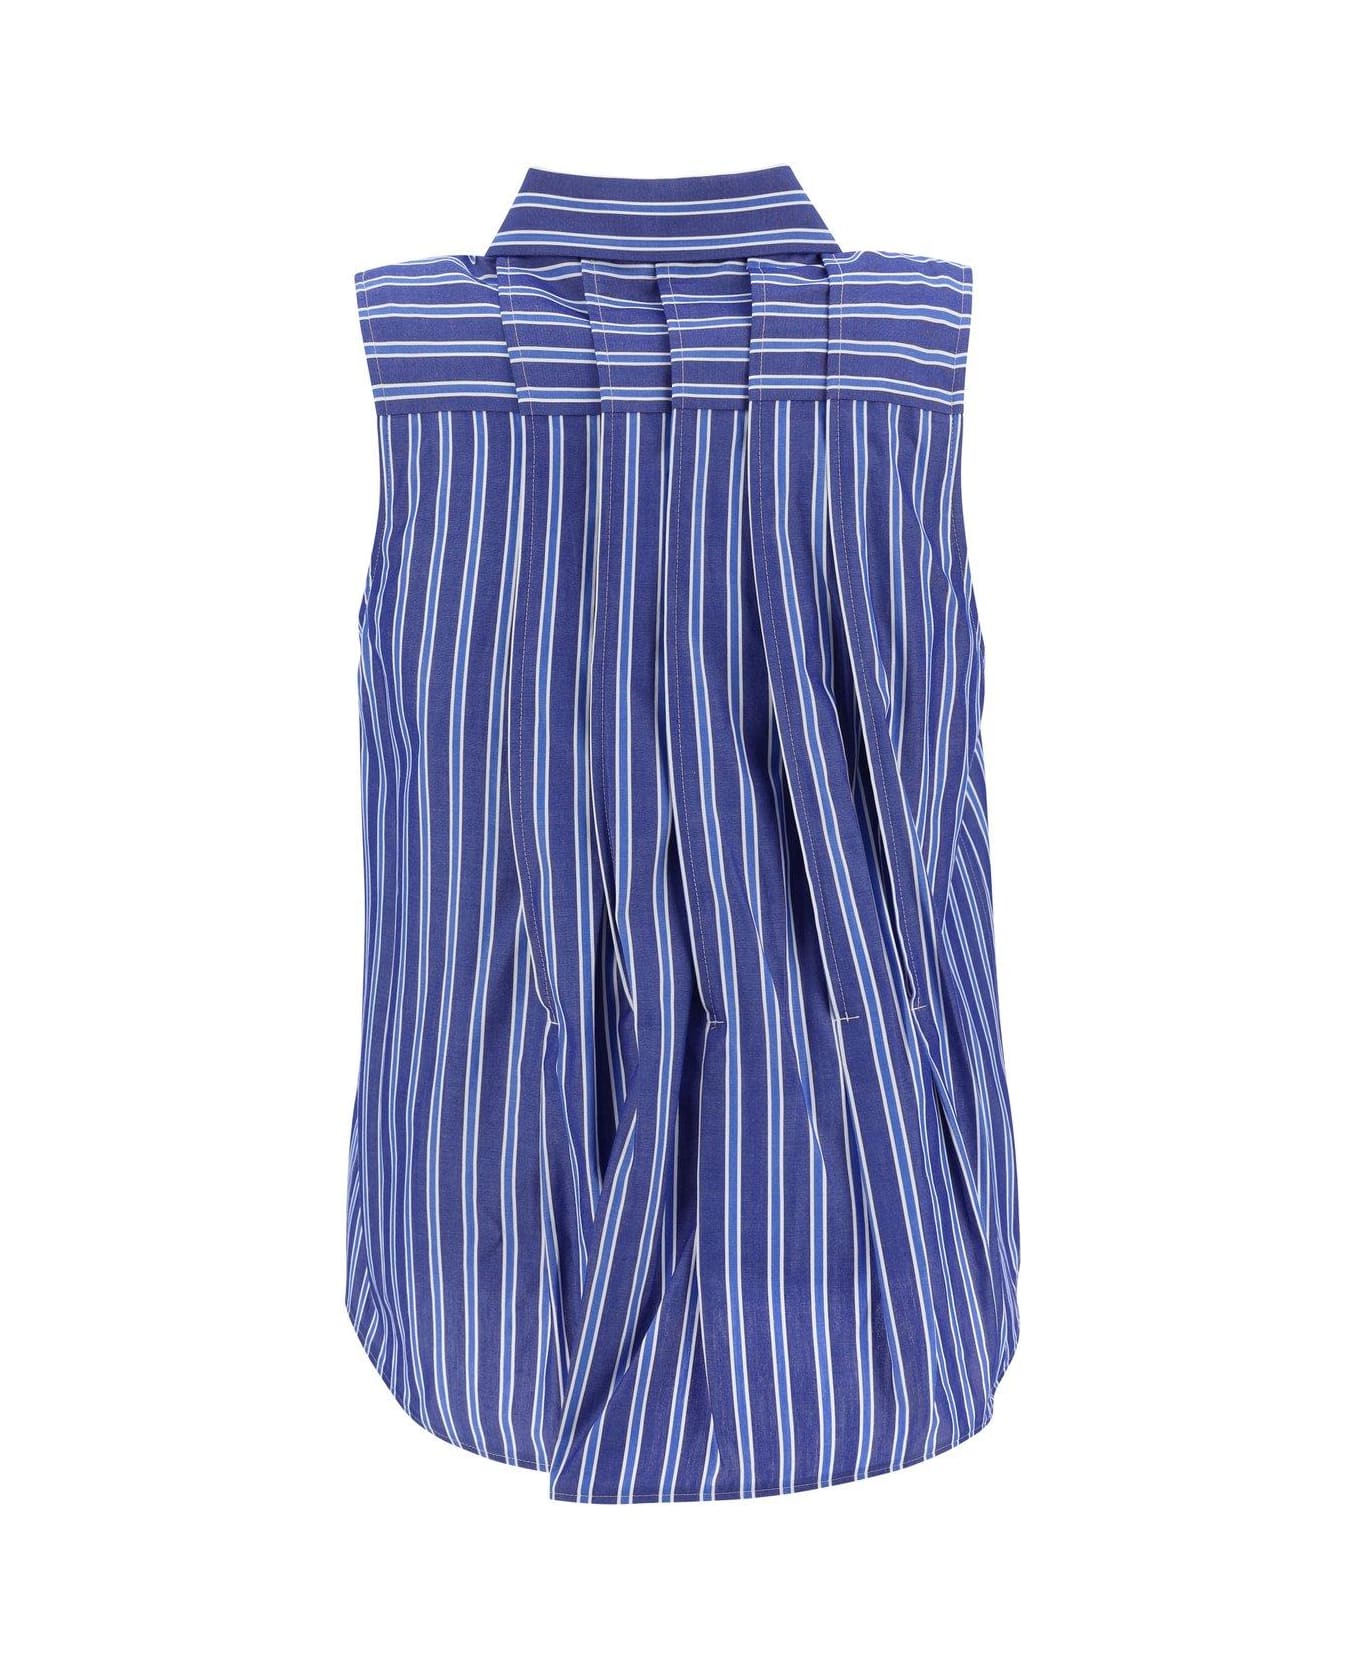 Sacai Striped Flared Hem Sleeveless Shirt - Blue シャツ